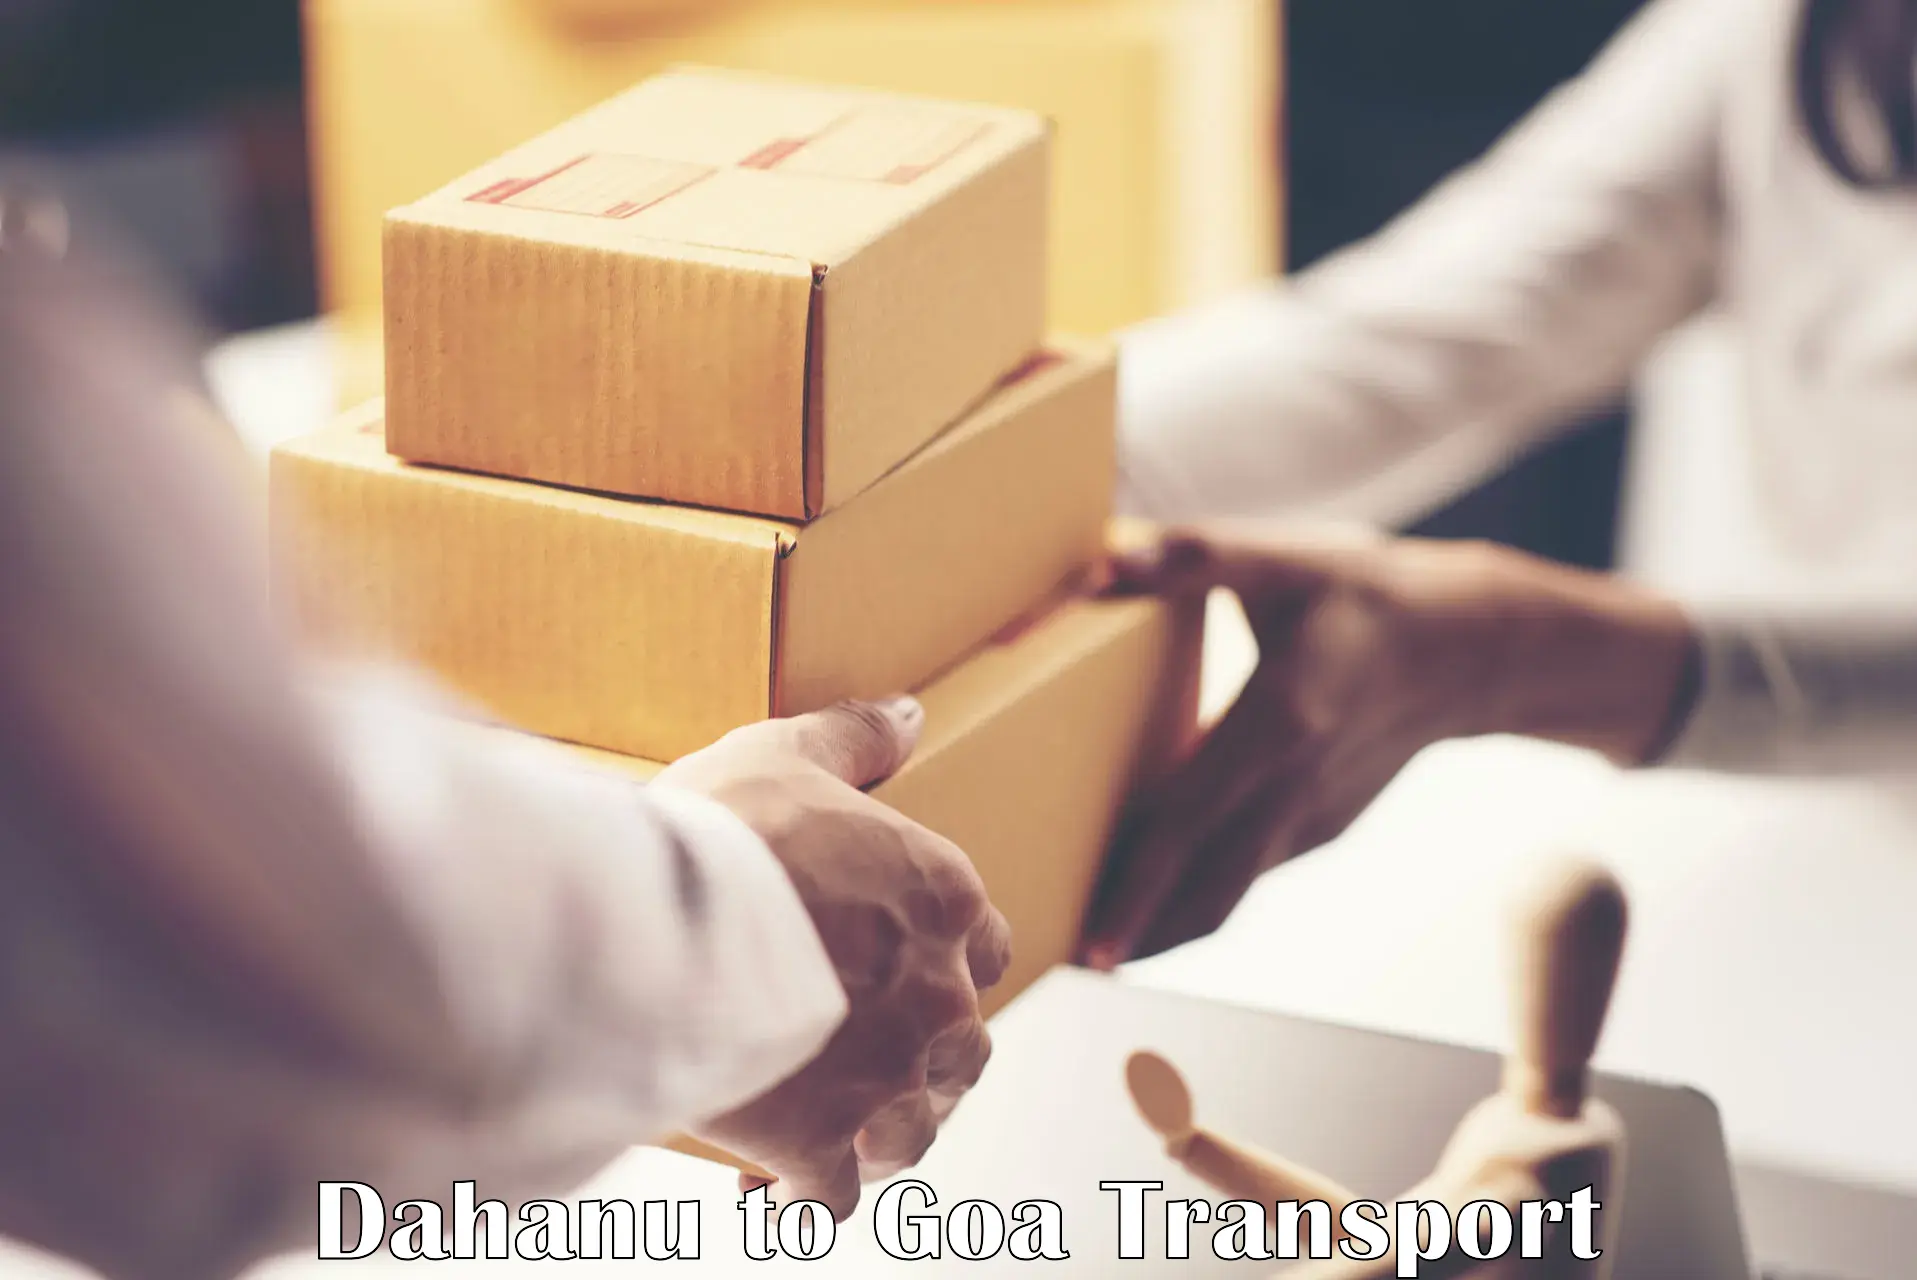 Domestic goods transportation services in Dahanu to Sanvordem